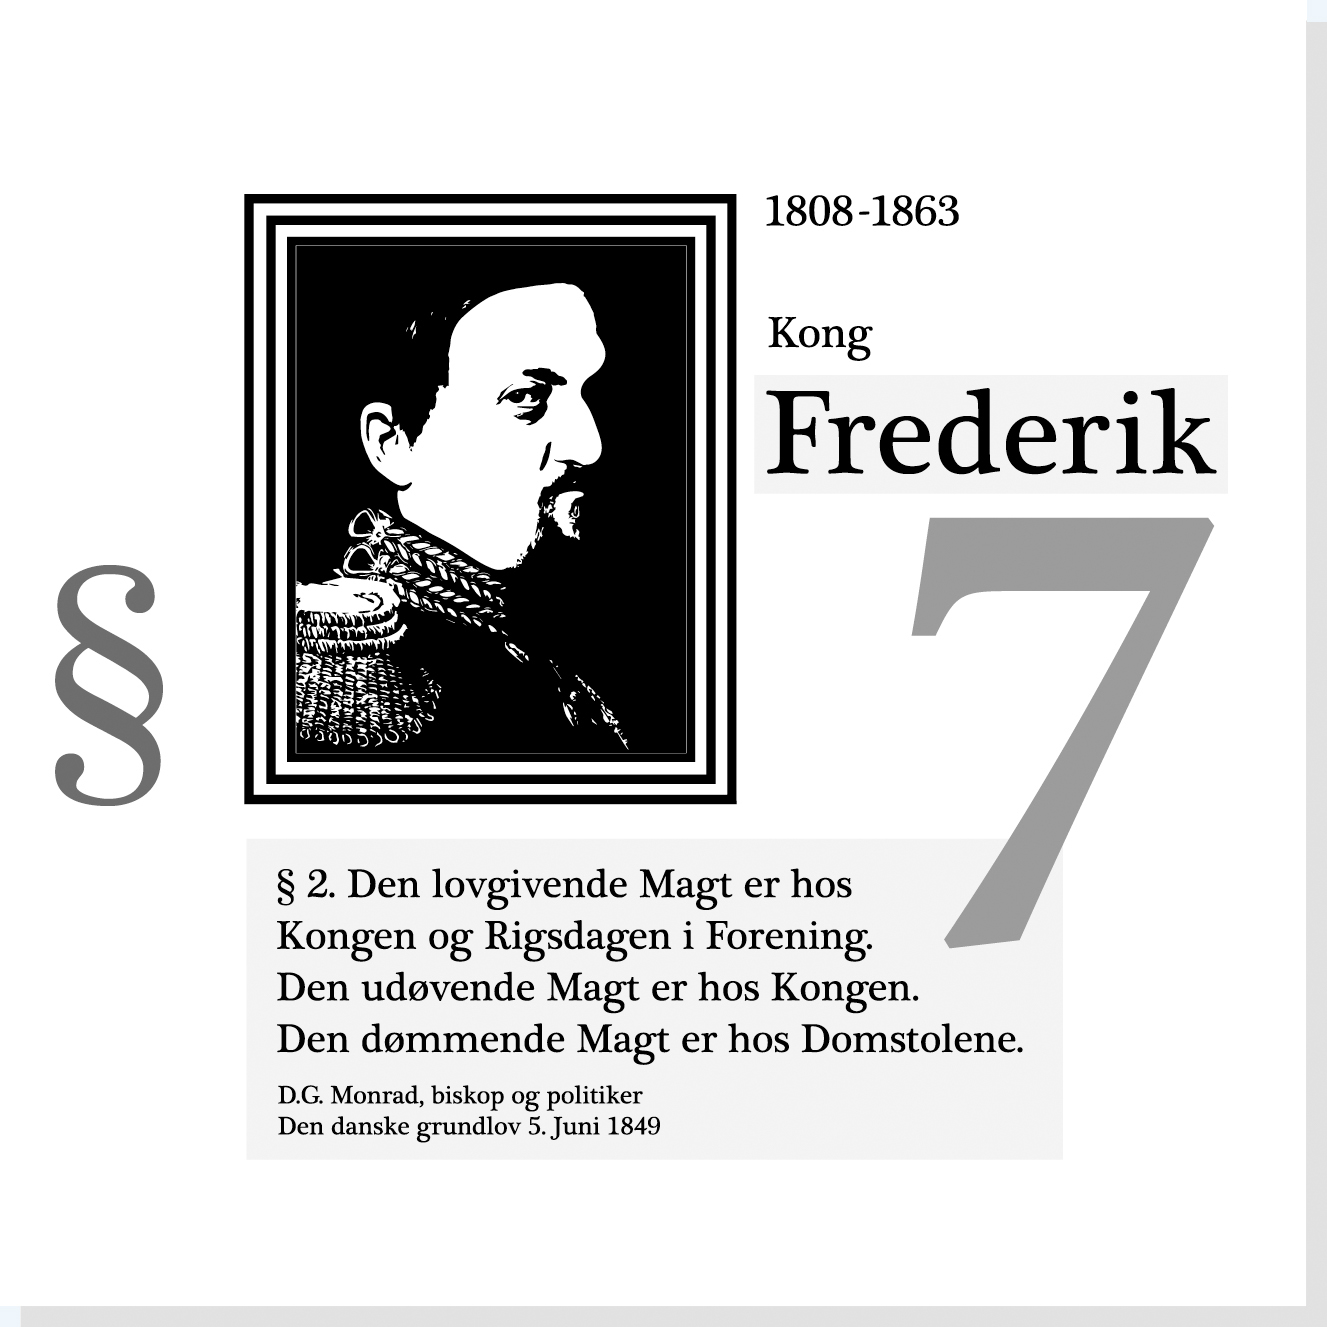 Kong Frederik d. 7. er en af Rysensteens 22 udvalgte danske dannelsespersoner